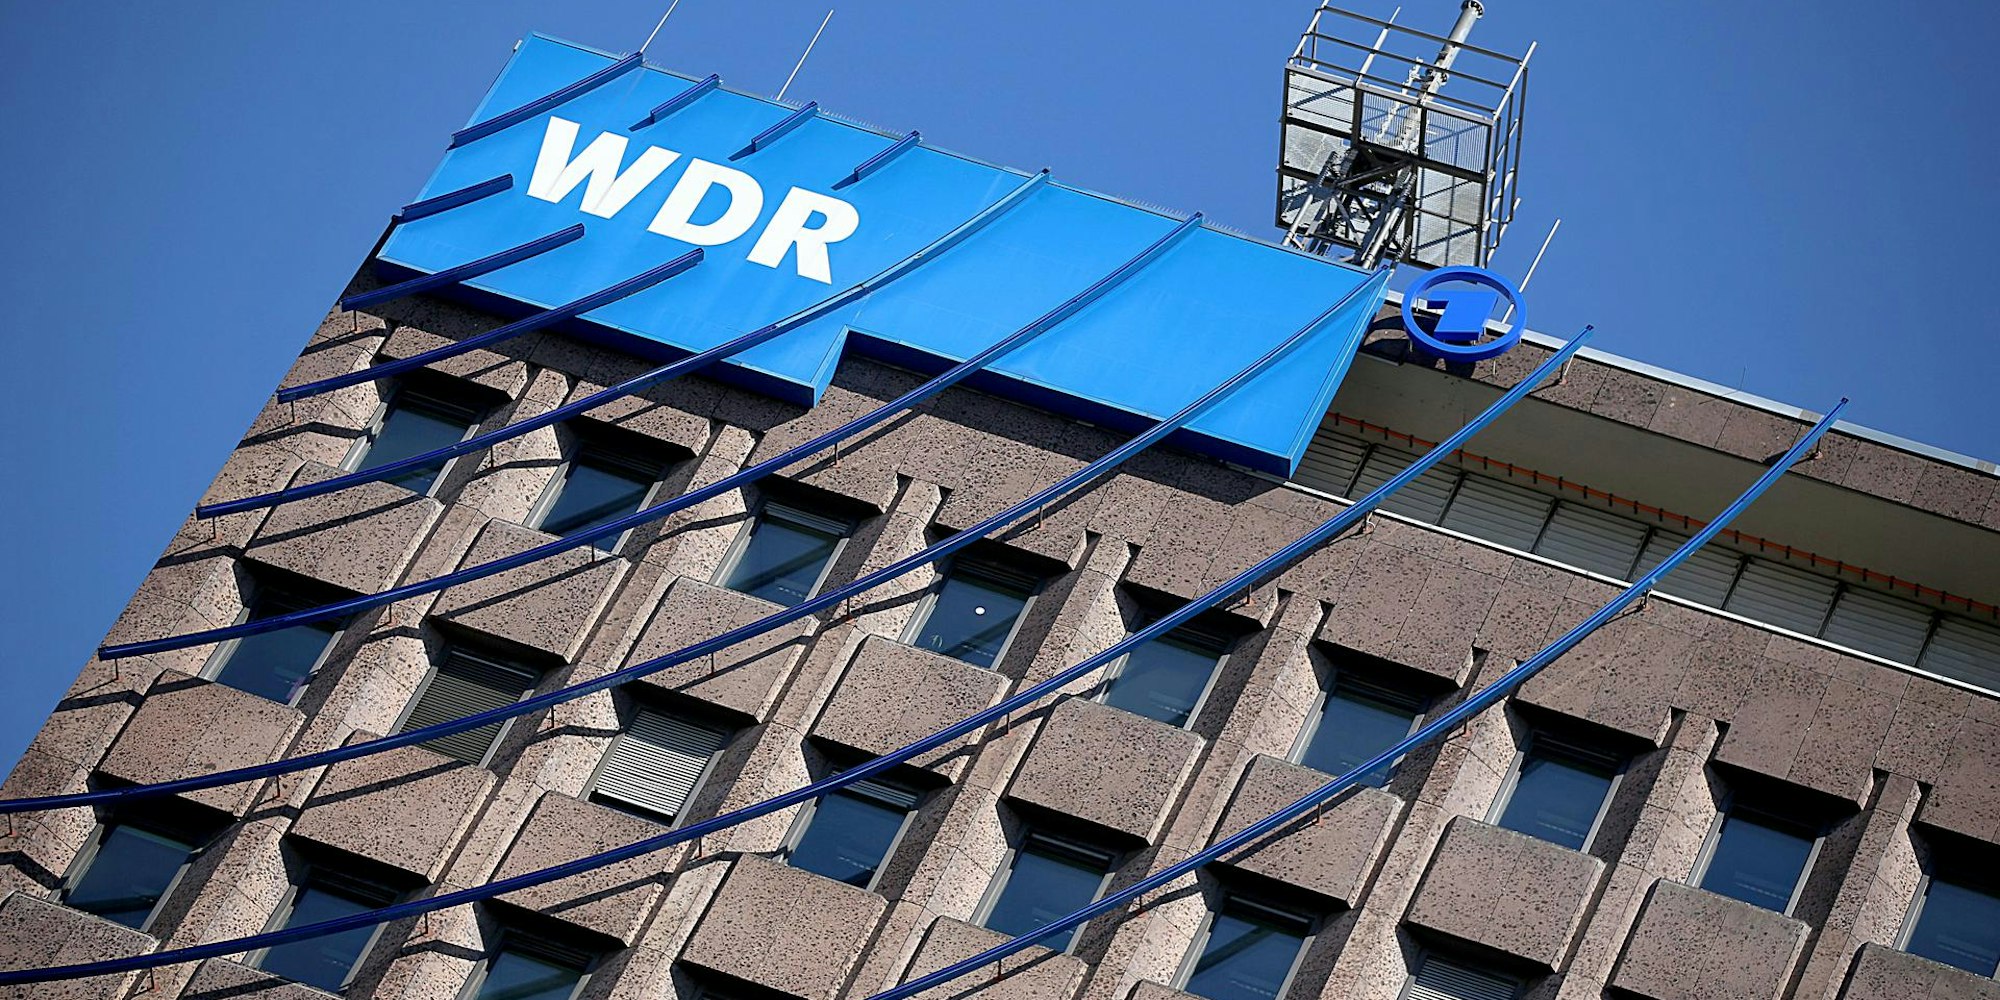 KU-WDR (002)